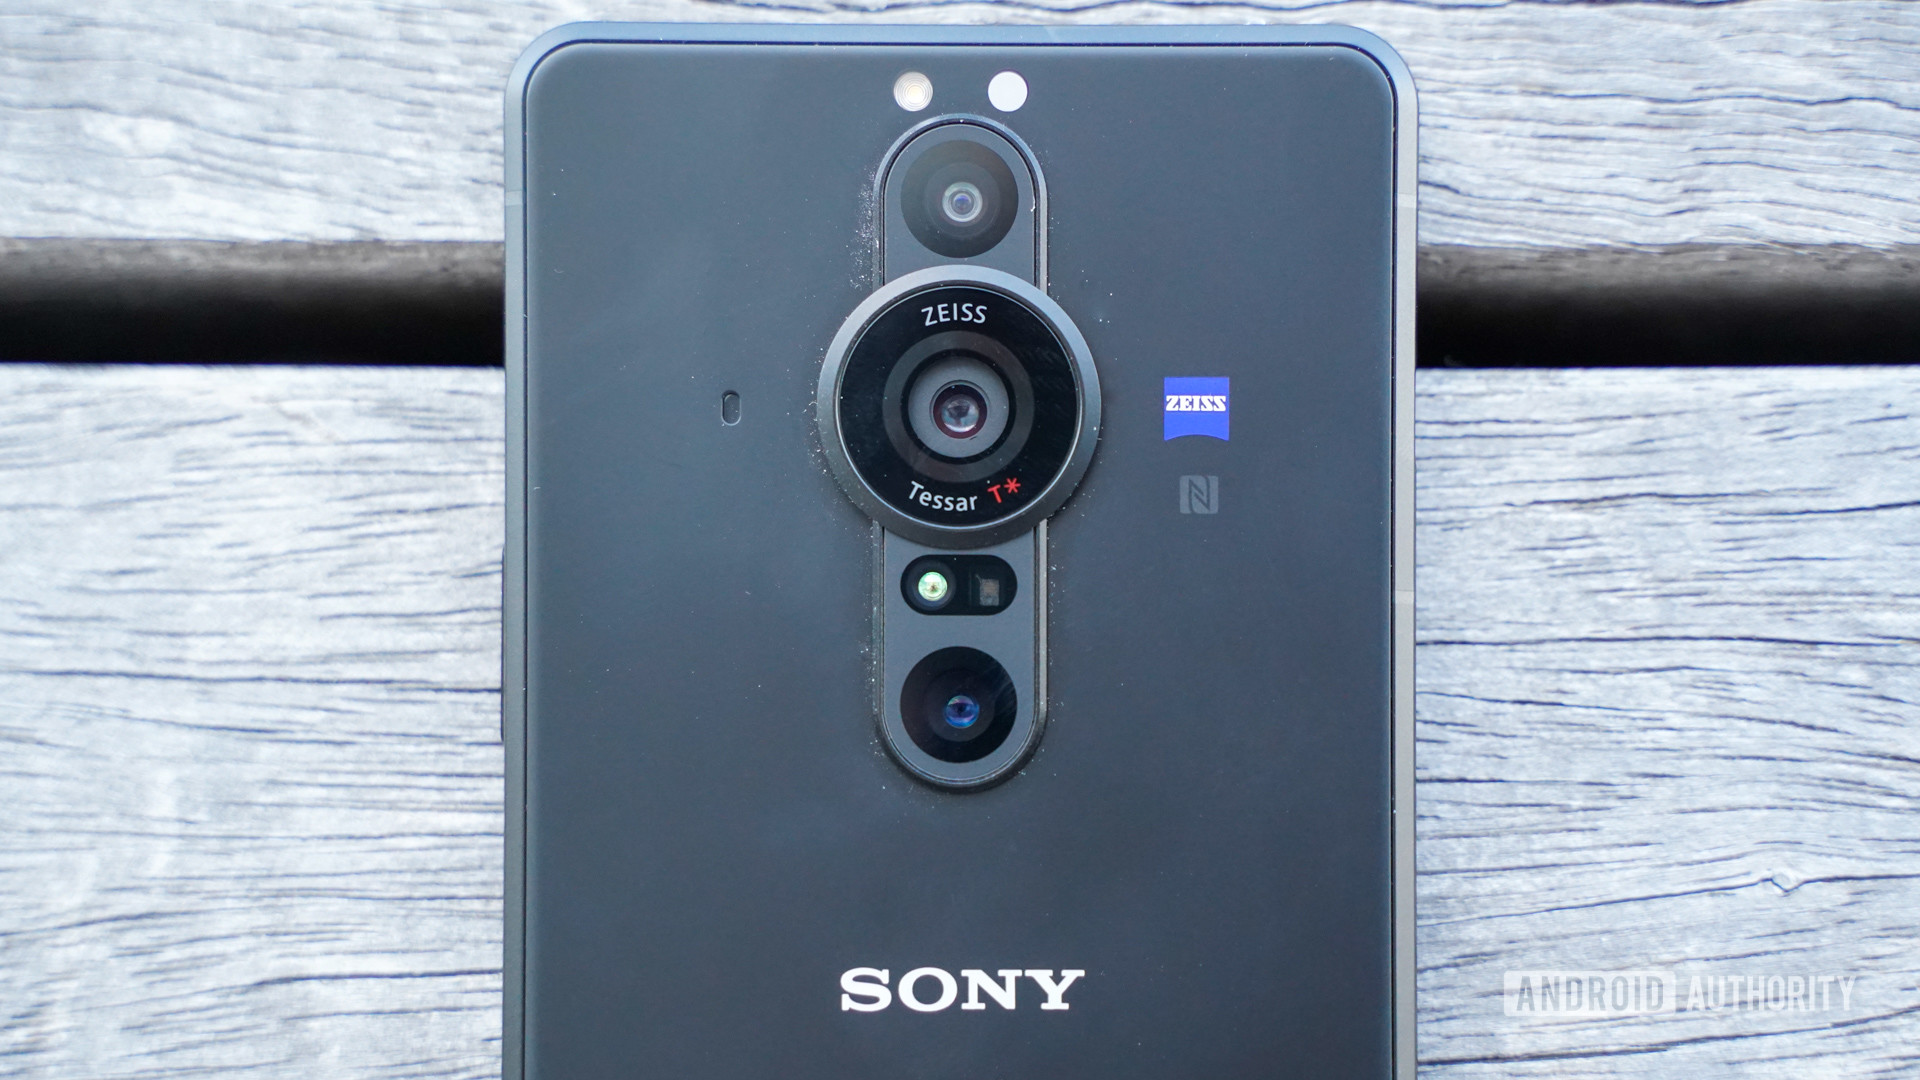 Sony Xperia Pro I camera module